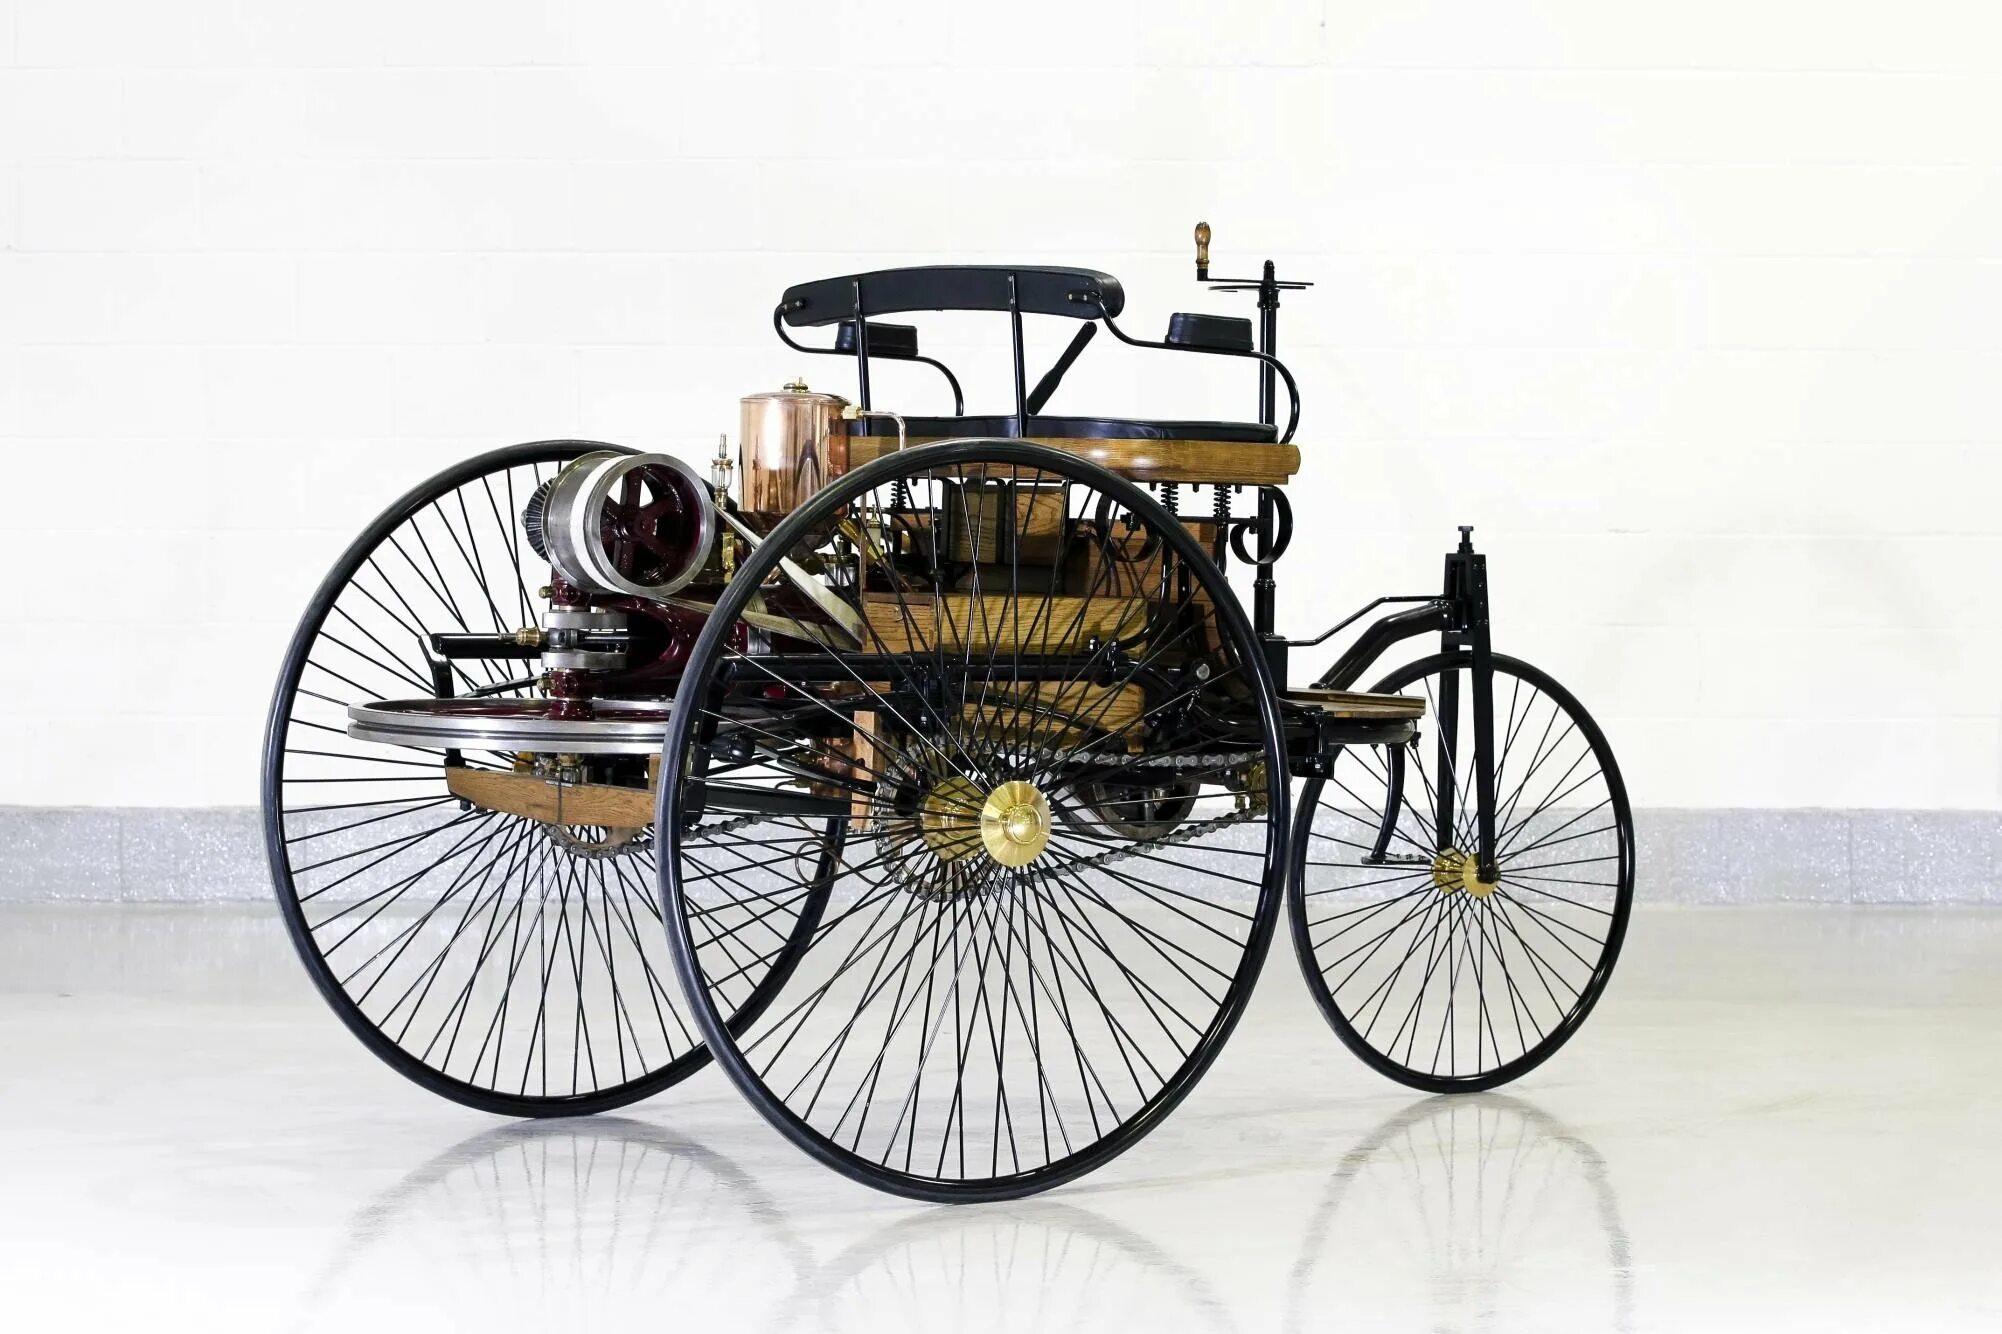 Про первый автомобиль. Benz Patent-Motorwagen 1886. Benz Patent-Motorwagen 1886 двигатель.